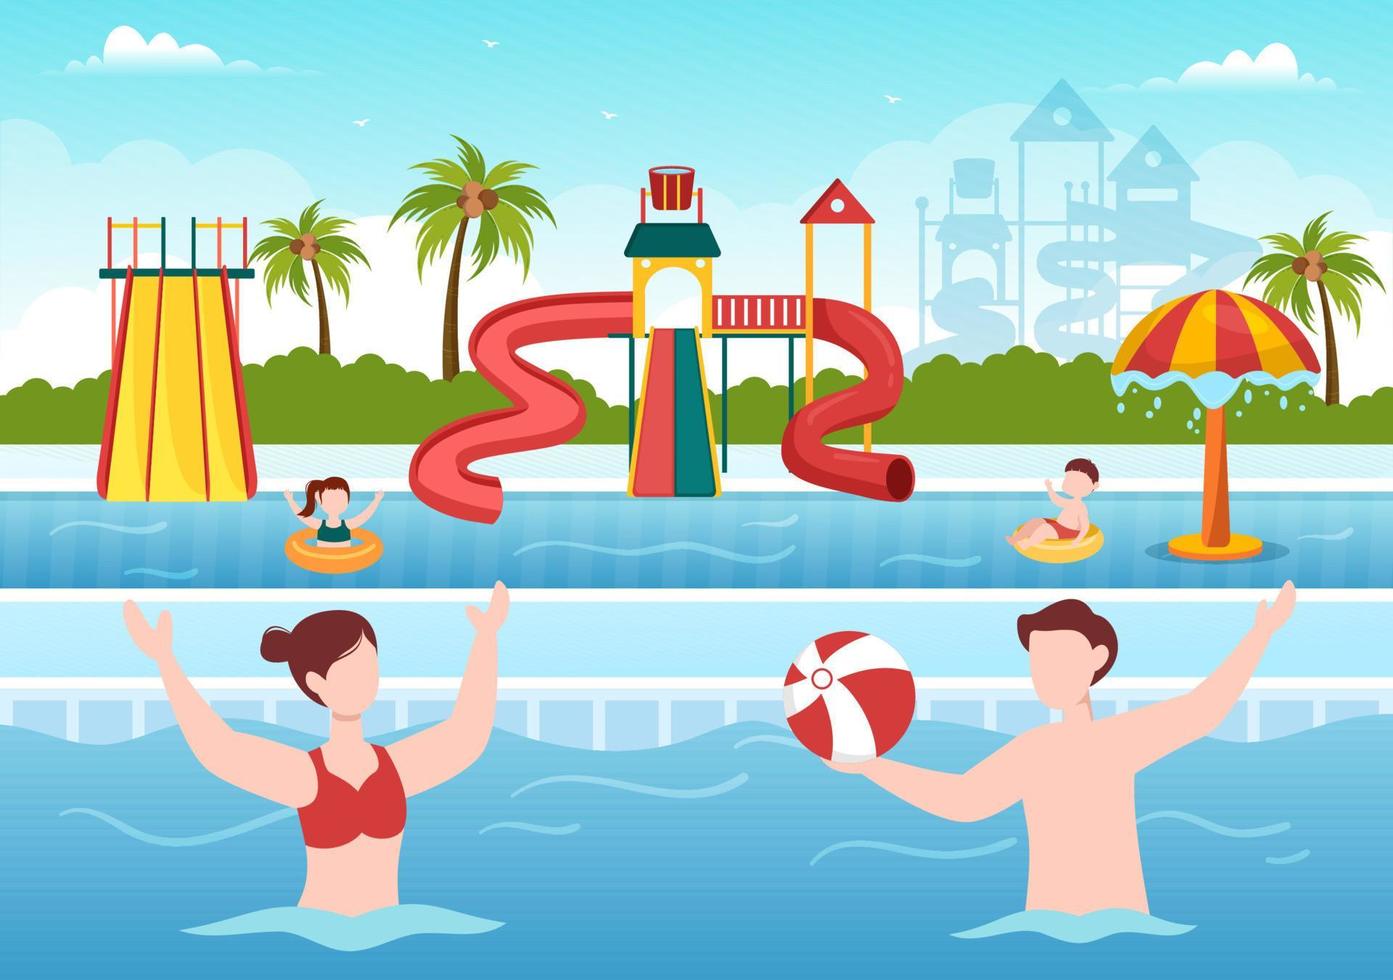 parco acquatico con piscina, divertimento, scivolo, palme e le persone nuotano per la ricreazione e il parco giochi all'aperto nell'illustrazione piatta del fumetto vettore